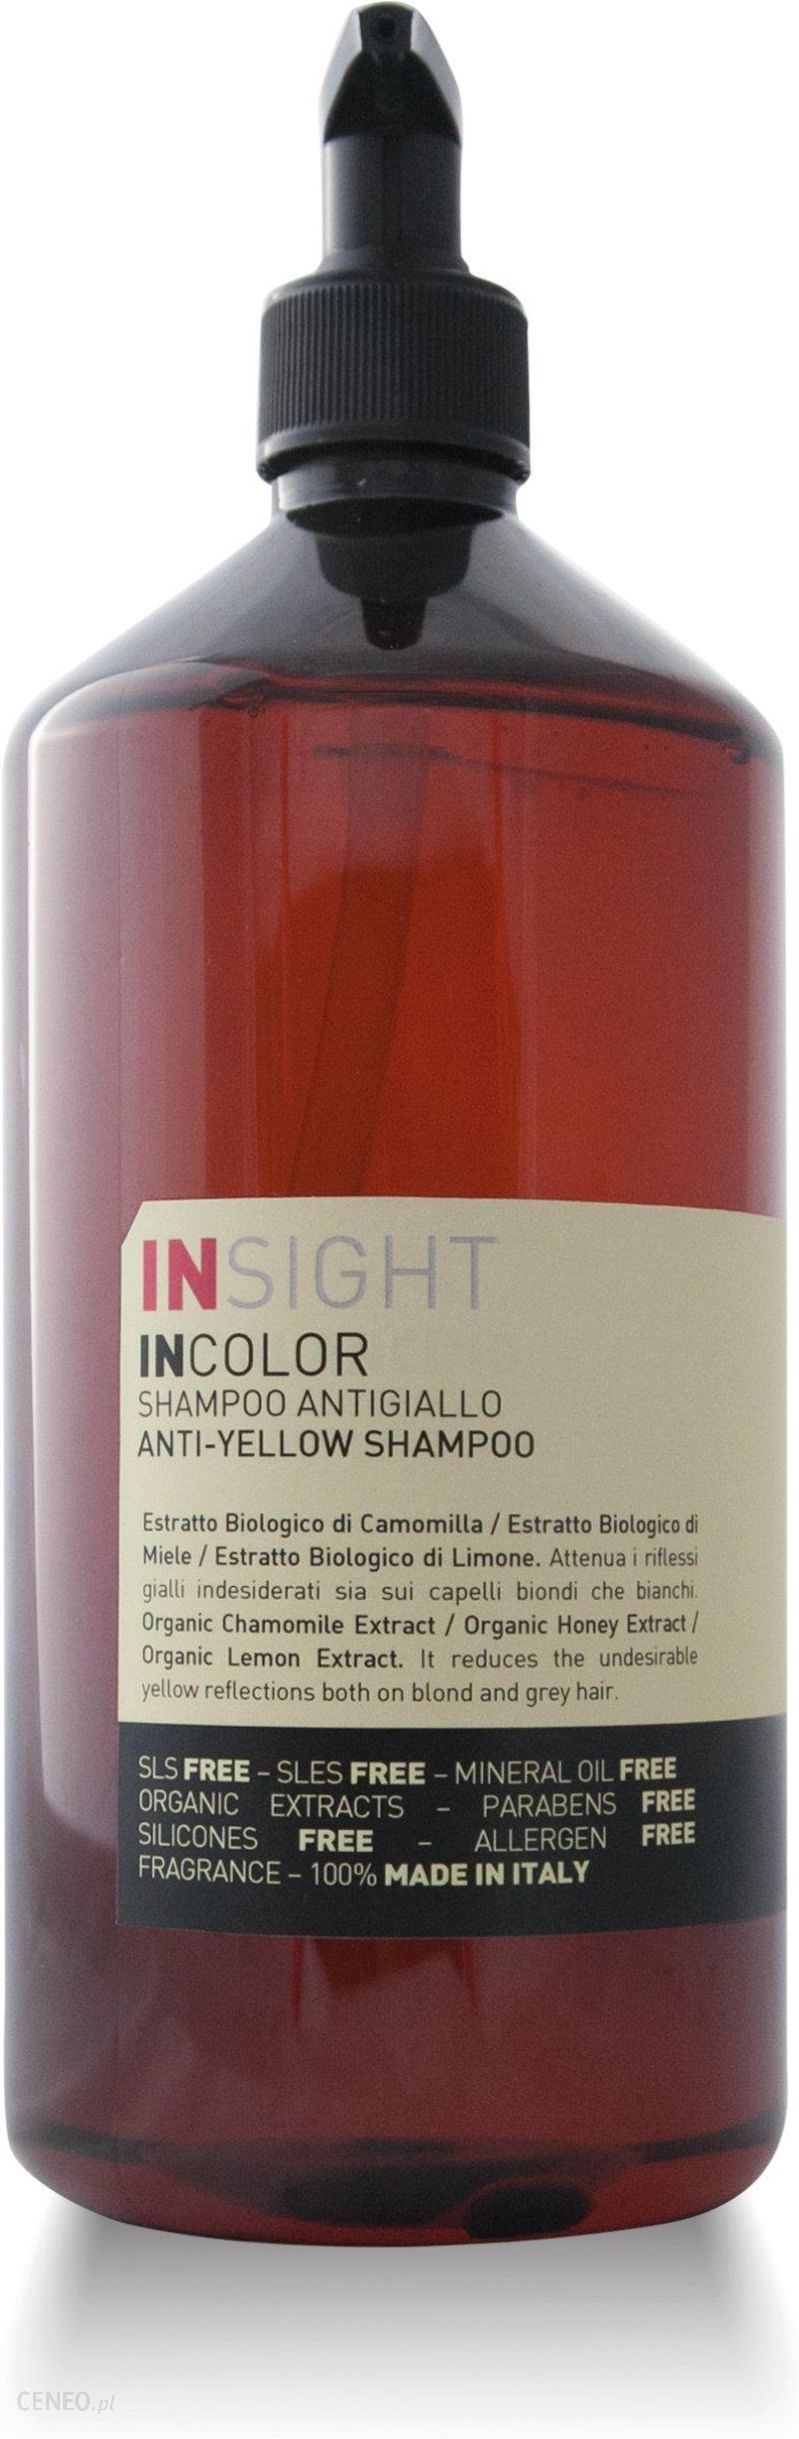 insight szampon ceneo